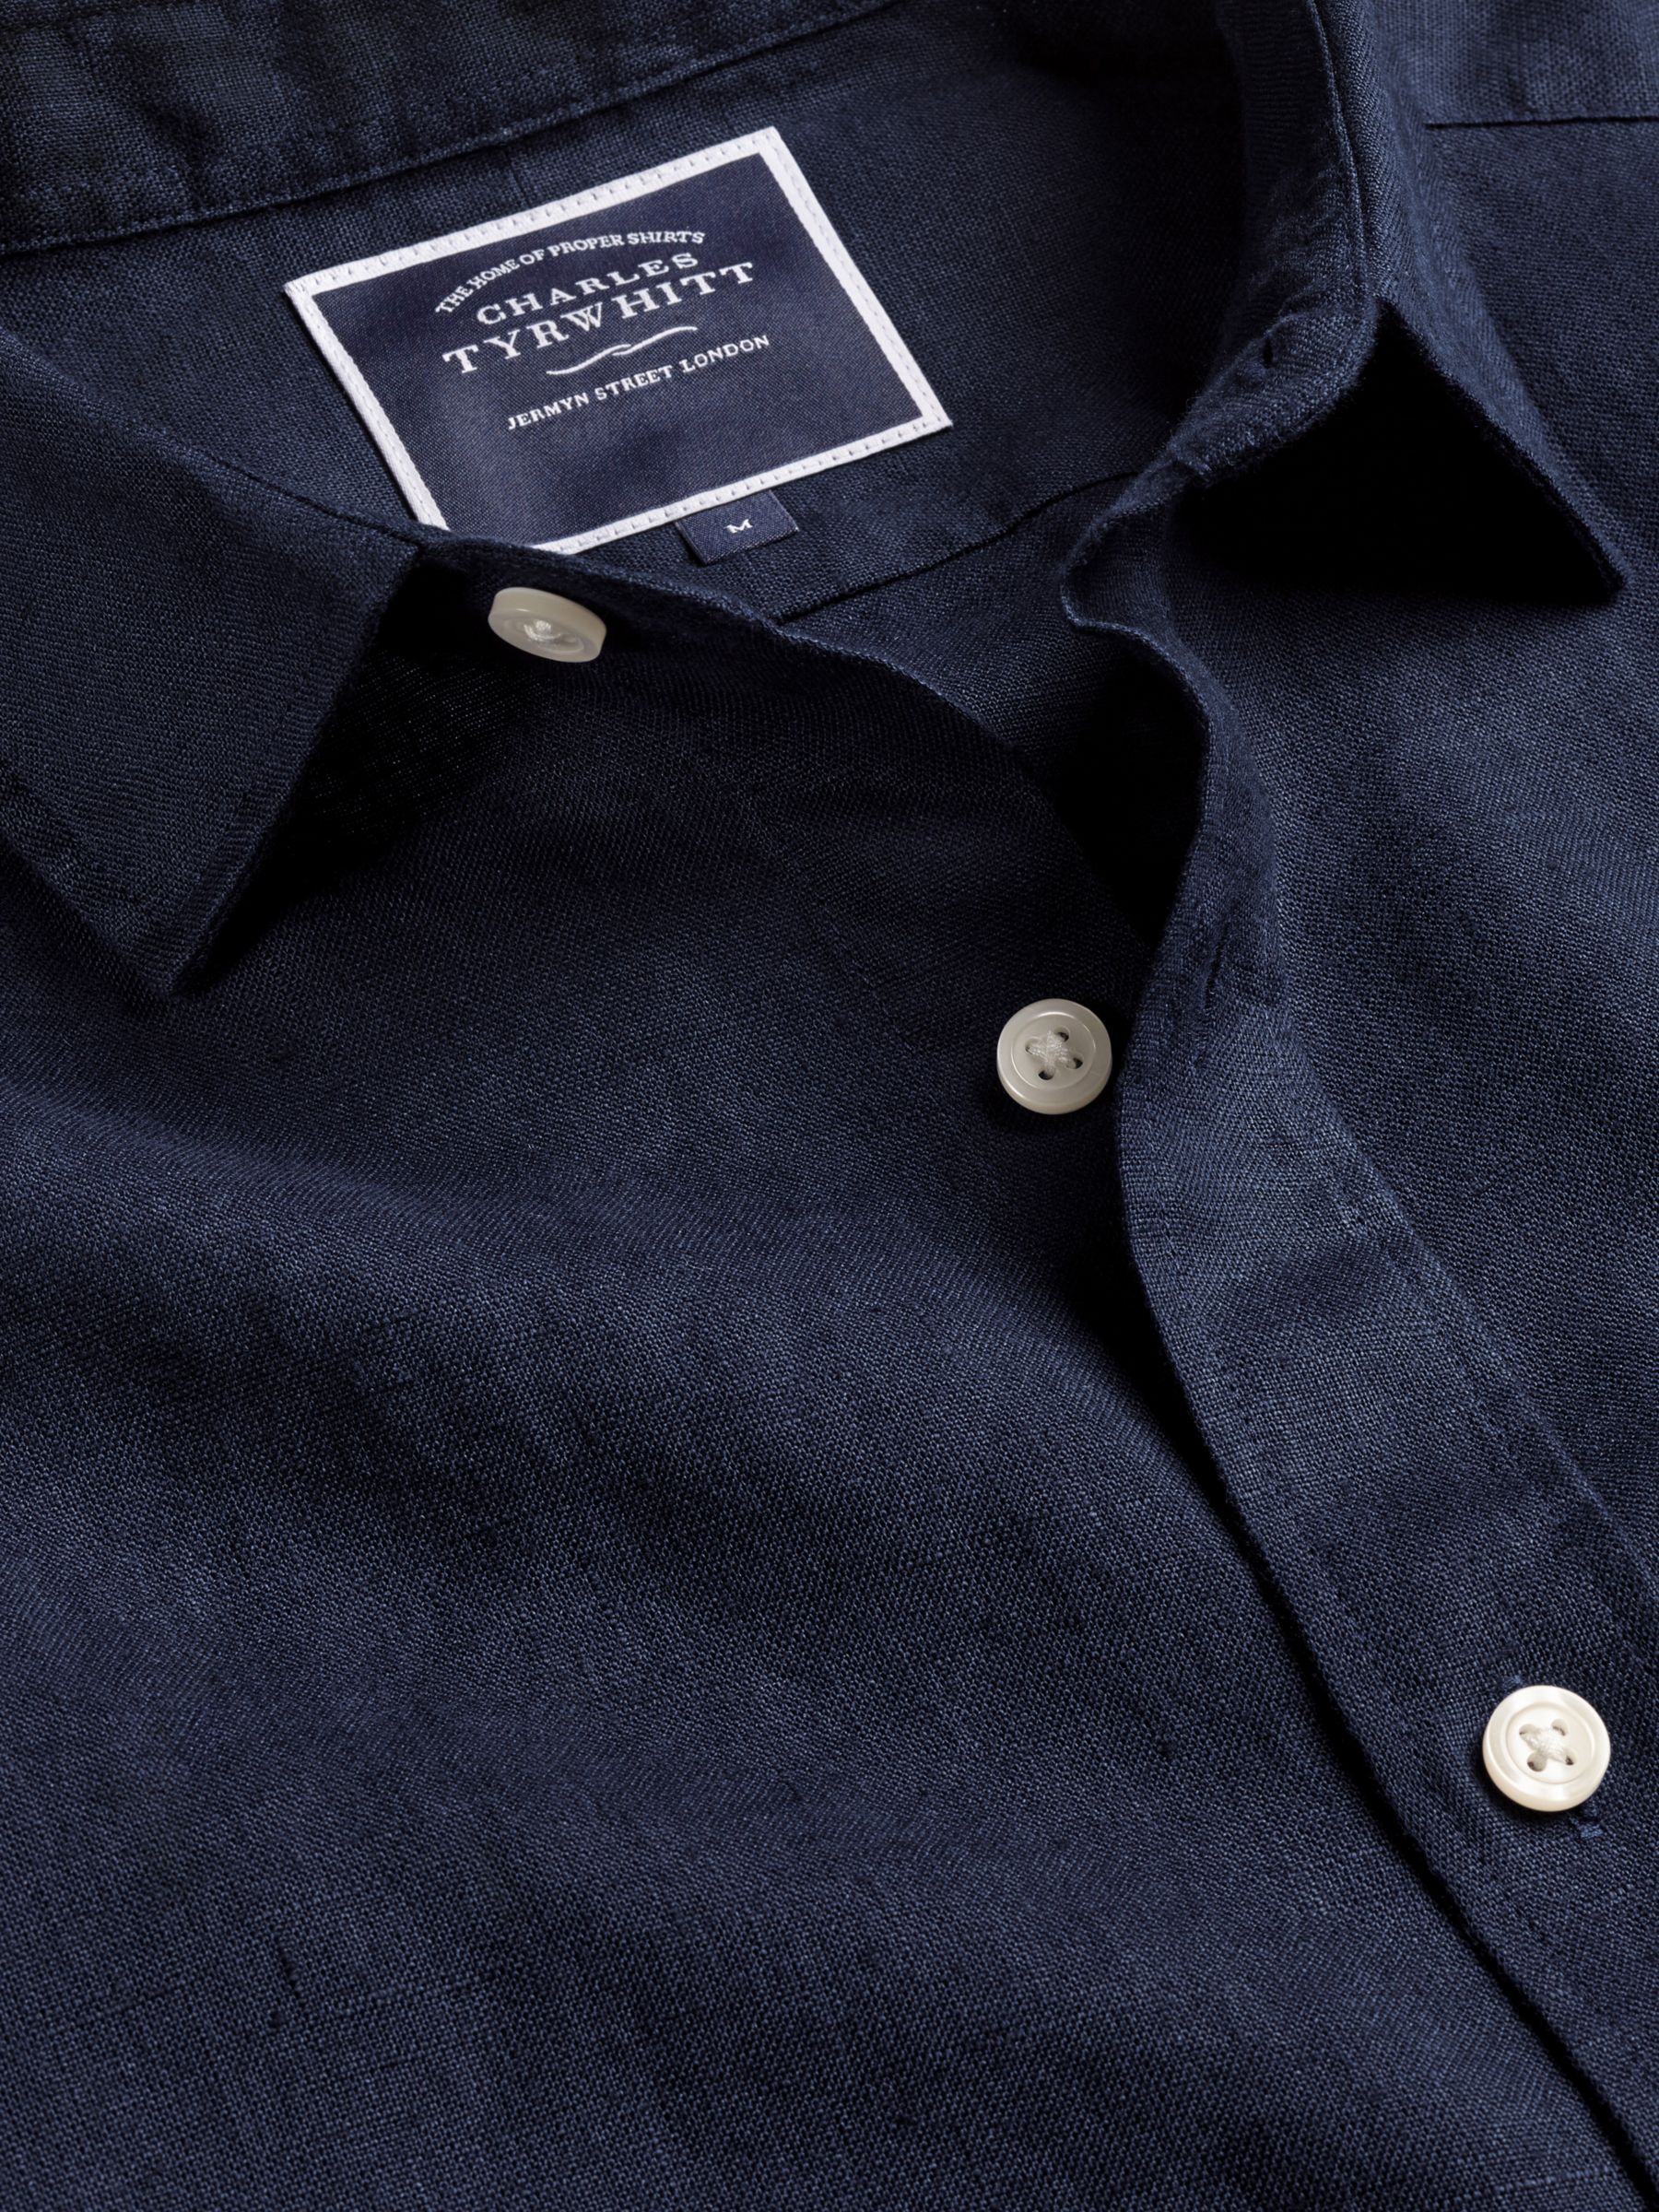 Charles Tyrwhitt Linen Short Sleeve Shirt, Navy, S